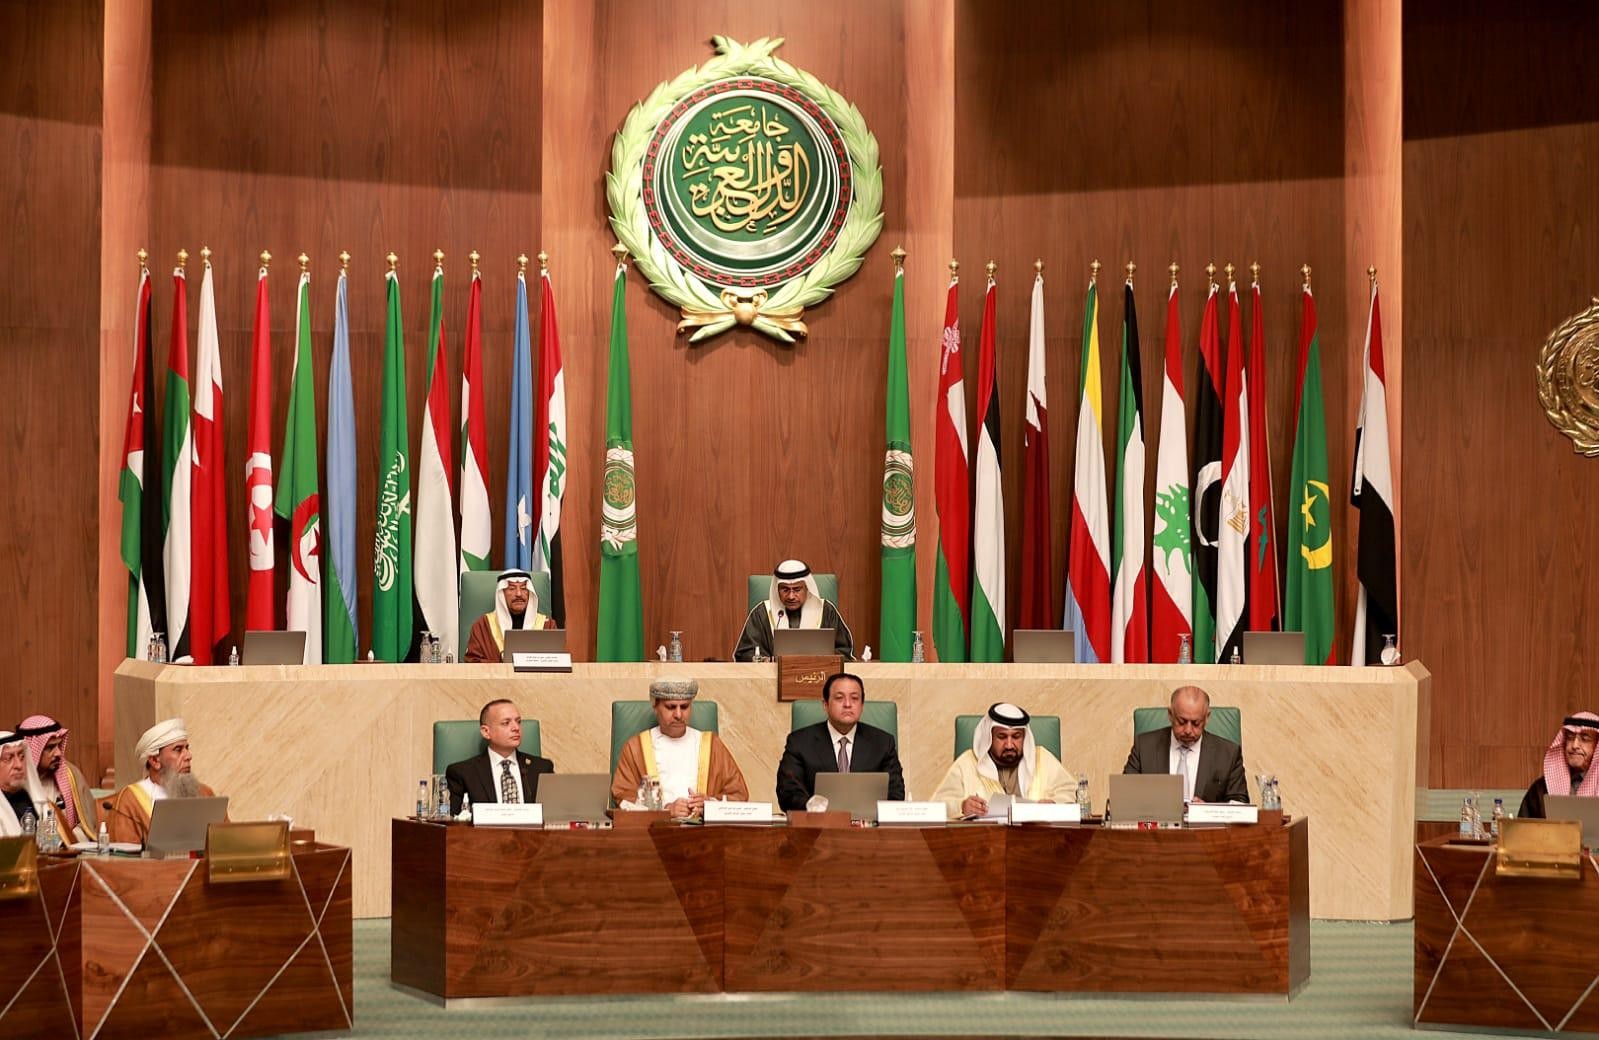 البرلمان العربي: المرأة نموذج ملهم في العطاء وركيزة أساسية في صياغة المستقبل.. وعند الأزمات تتواجد في الصفوف الأمامية